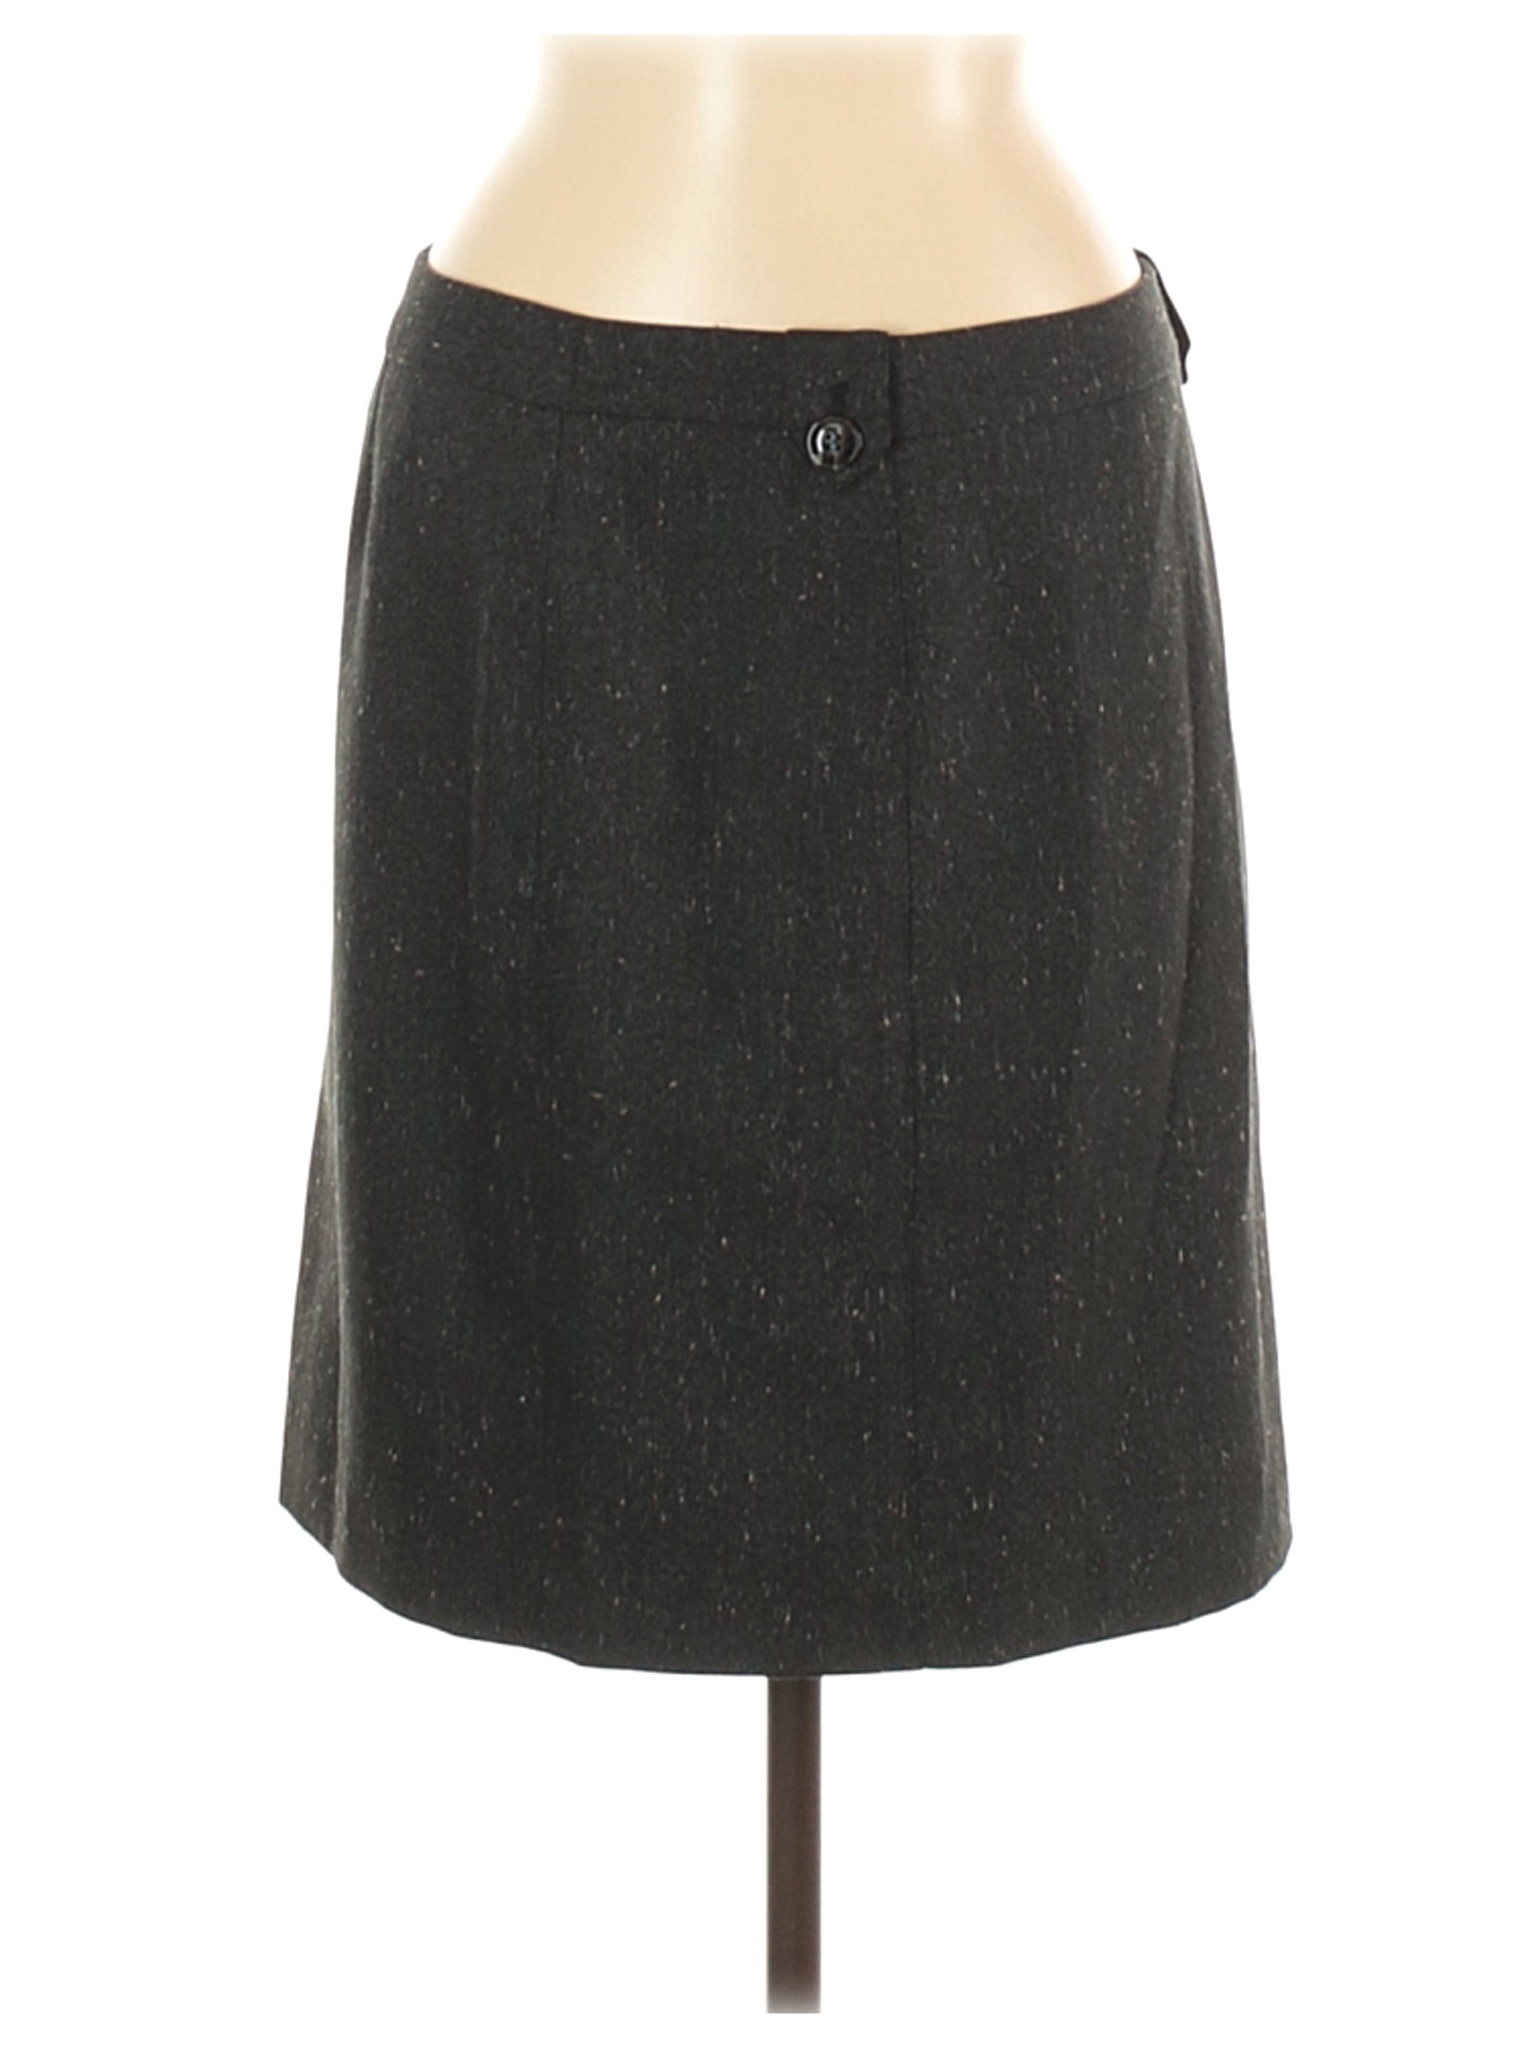 Morrissey Women Black Casual Skirt 6 | eBay